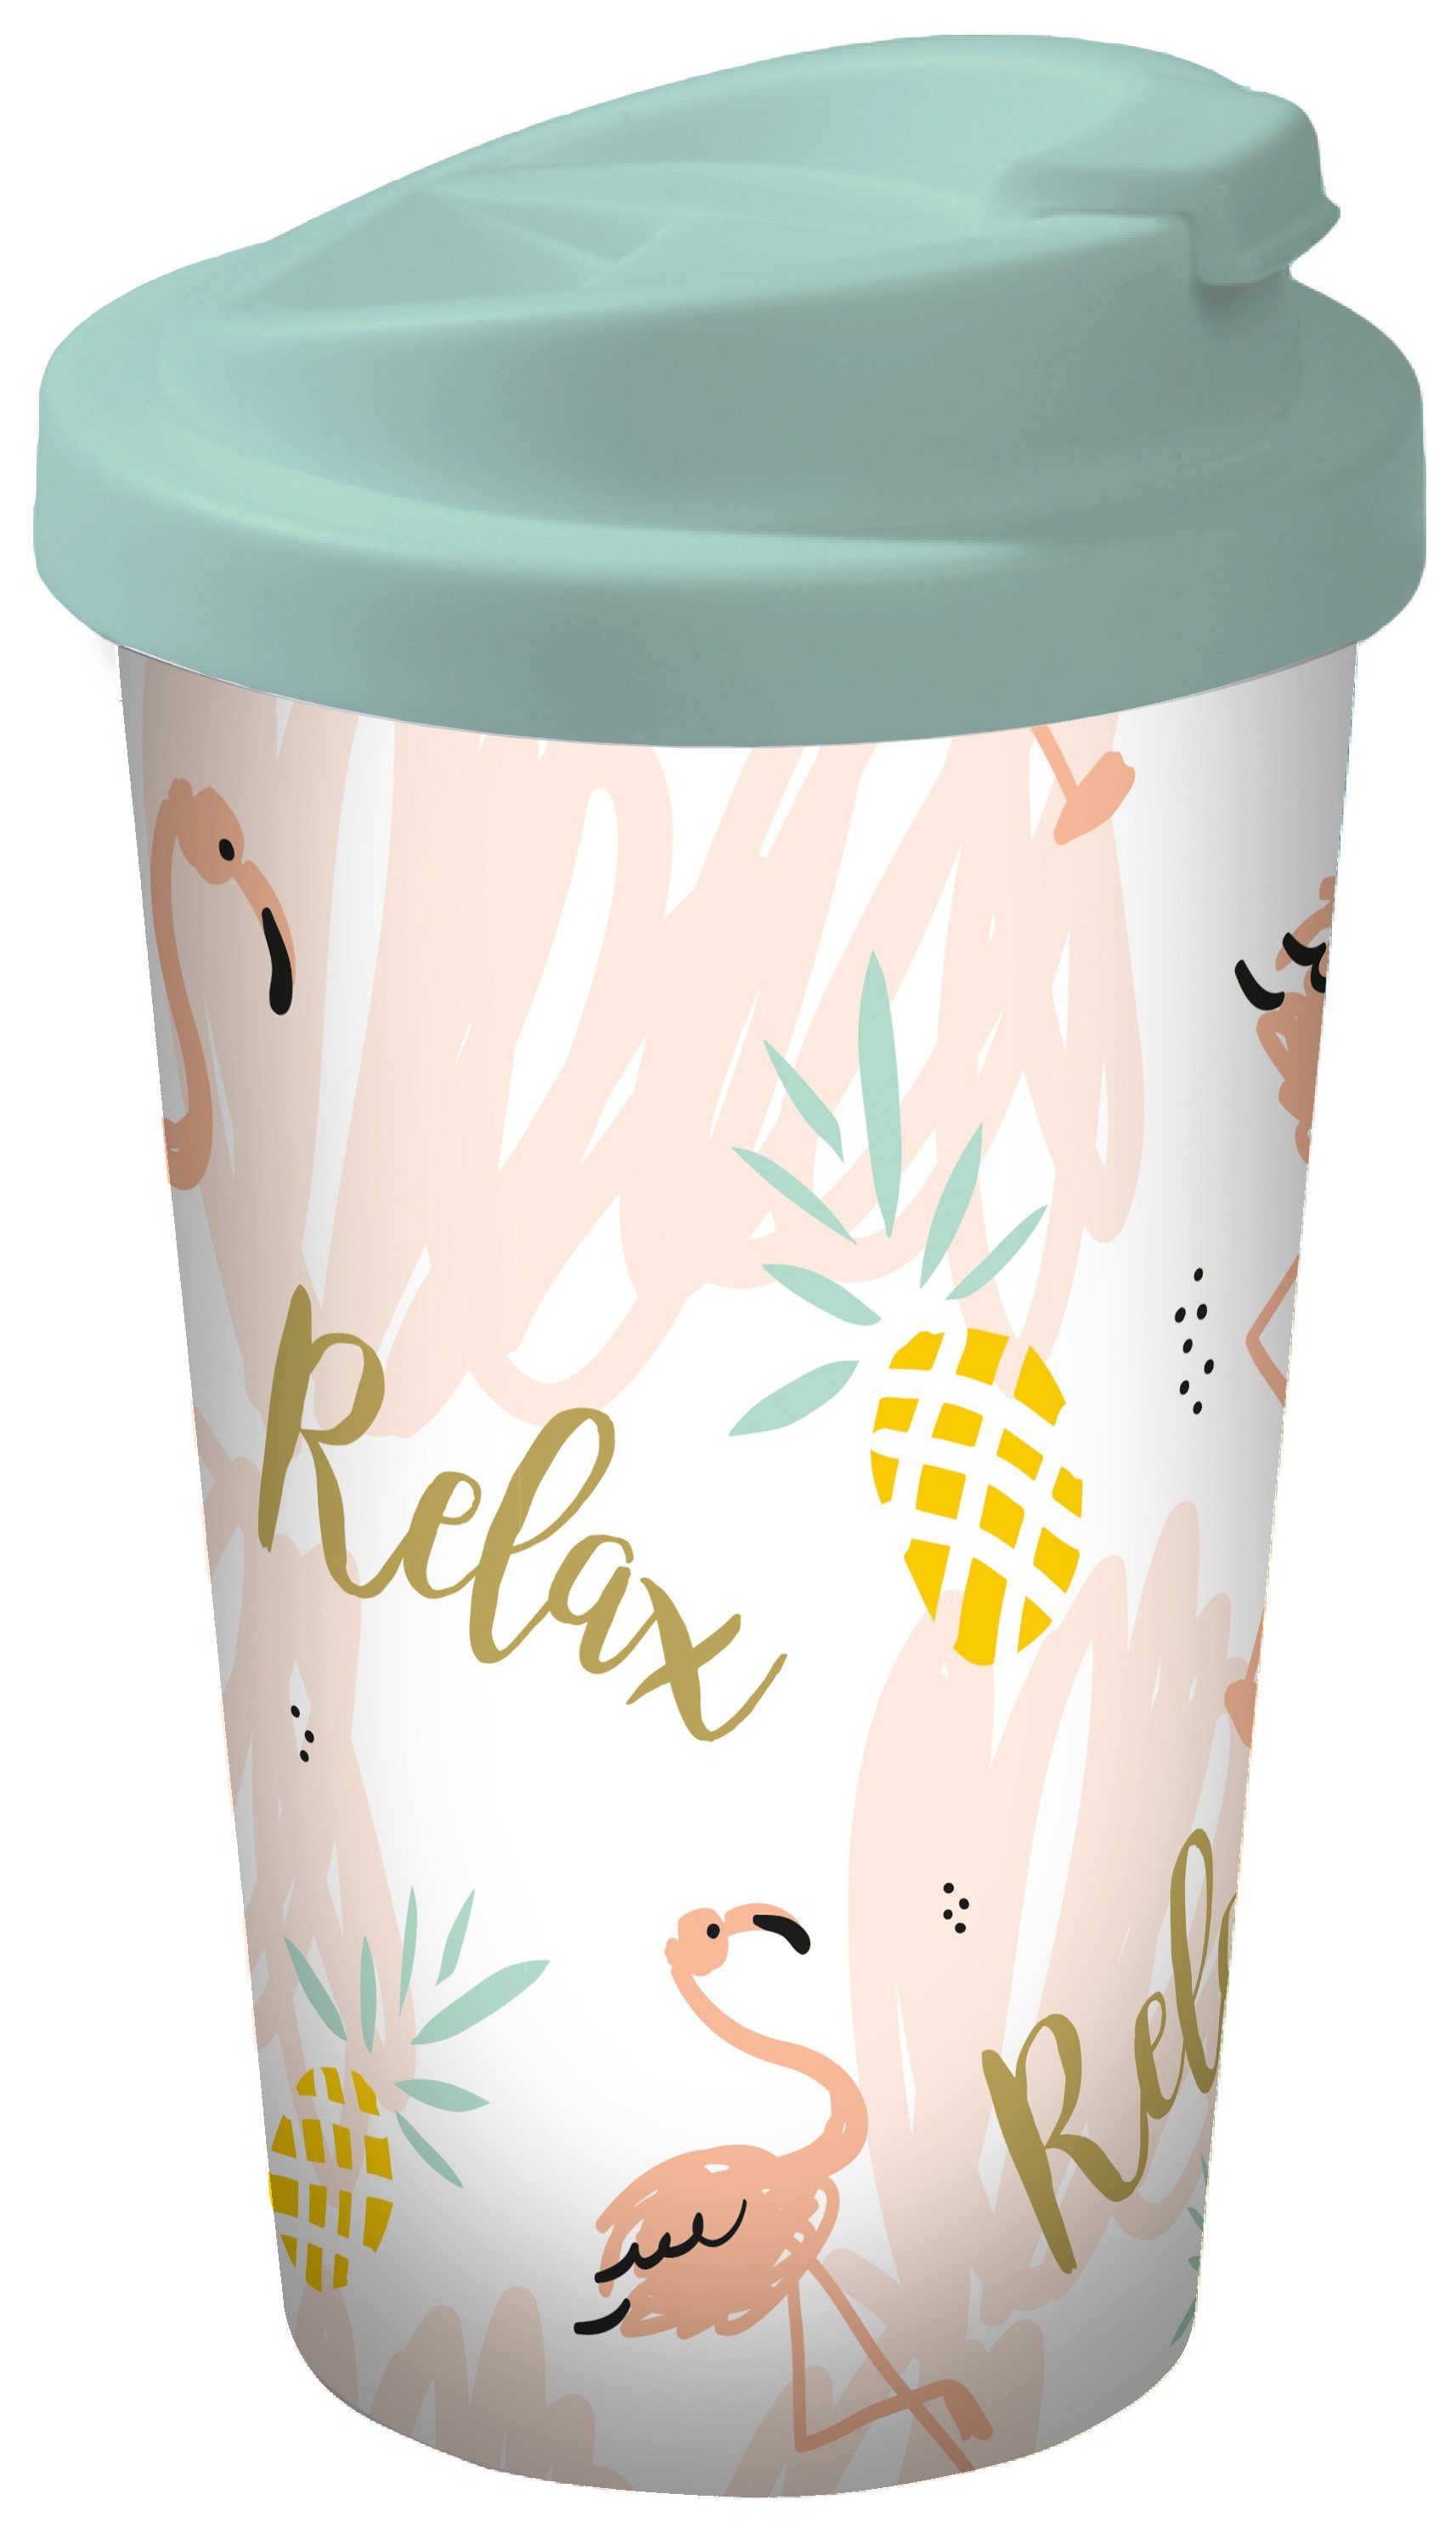 Geda Labels GmbH Coffee-to-go-Becher Flamingo Relax, PP, Grün, 400 ml, doppelwandig, auslaufsicher